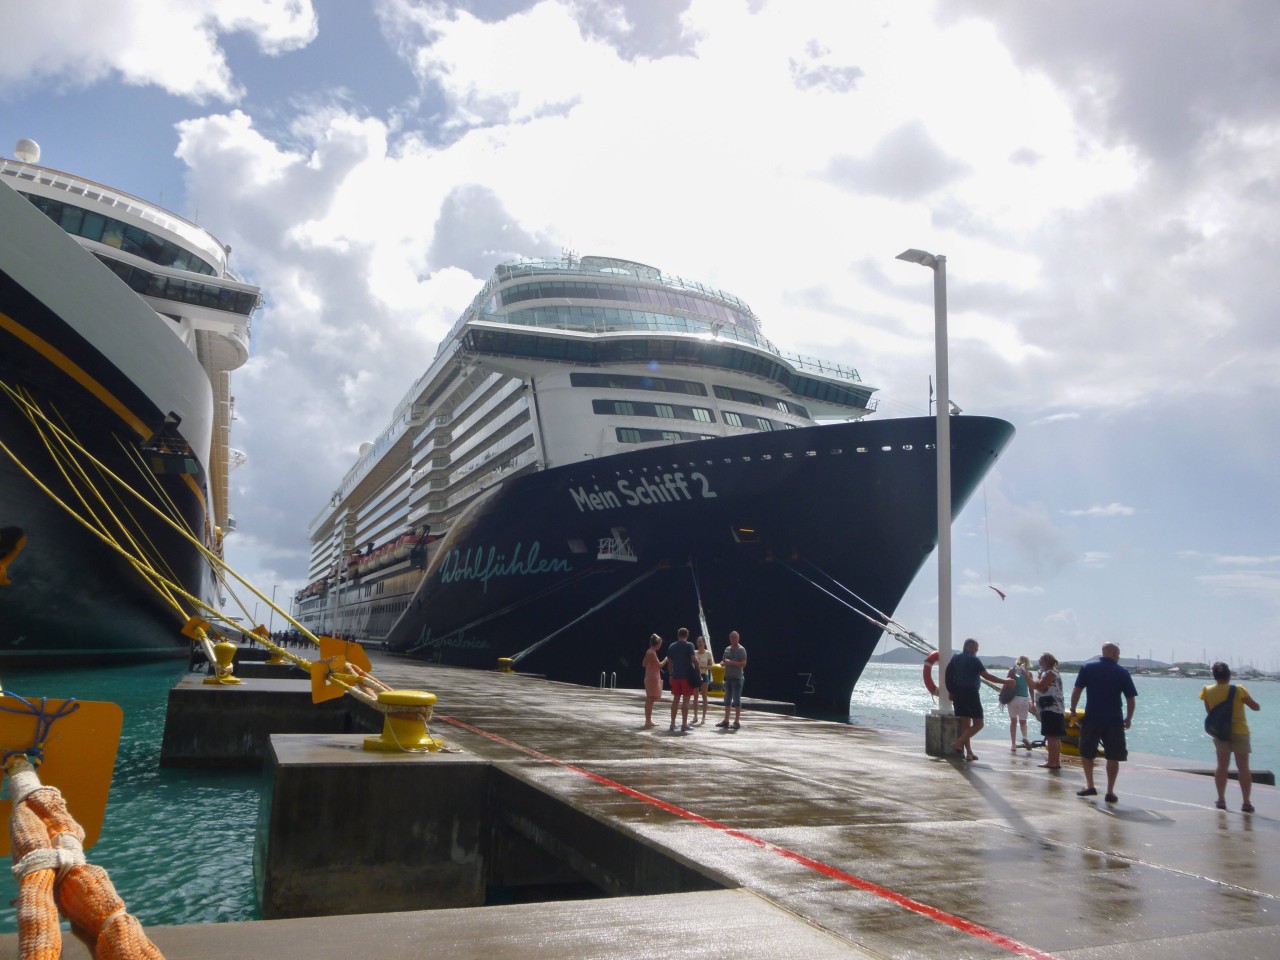 Für eine Reise der "Mein Schiff" wurde von Tui Cruises nun beschlossen, einige Kunden auszuschließen.